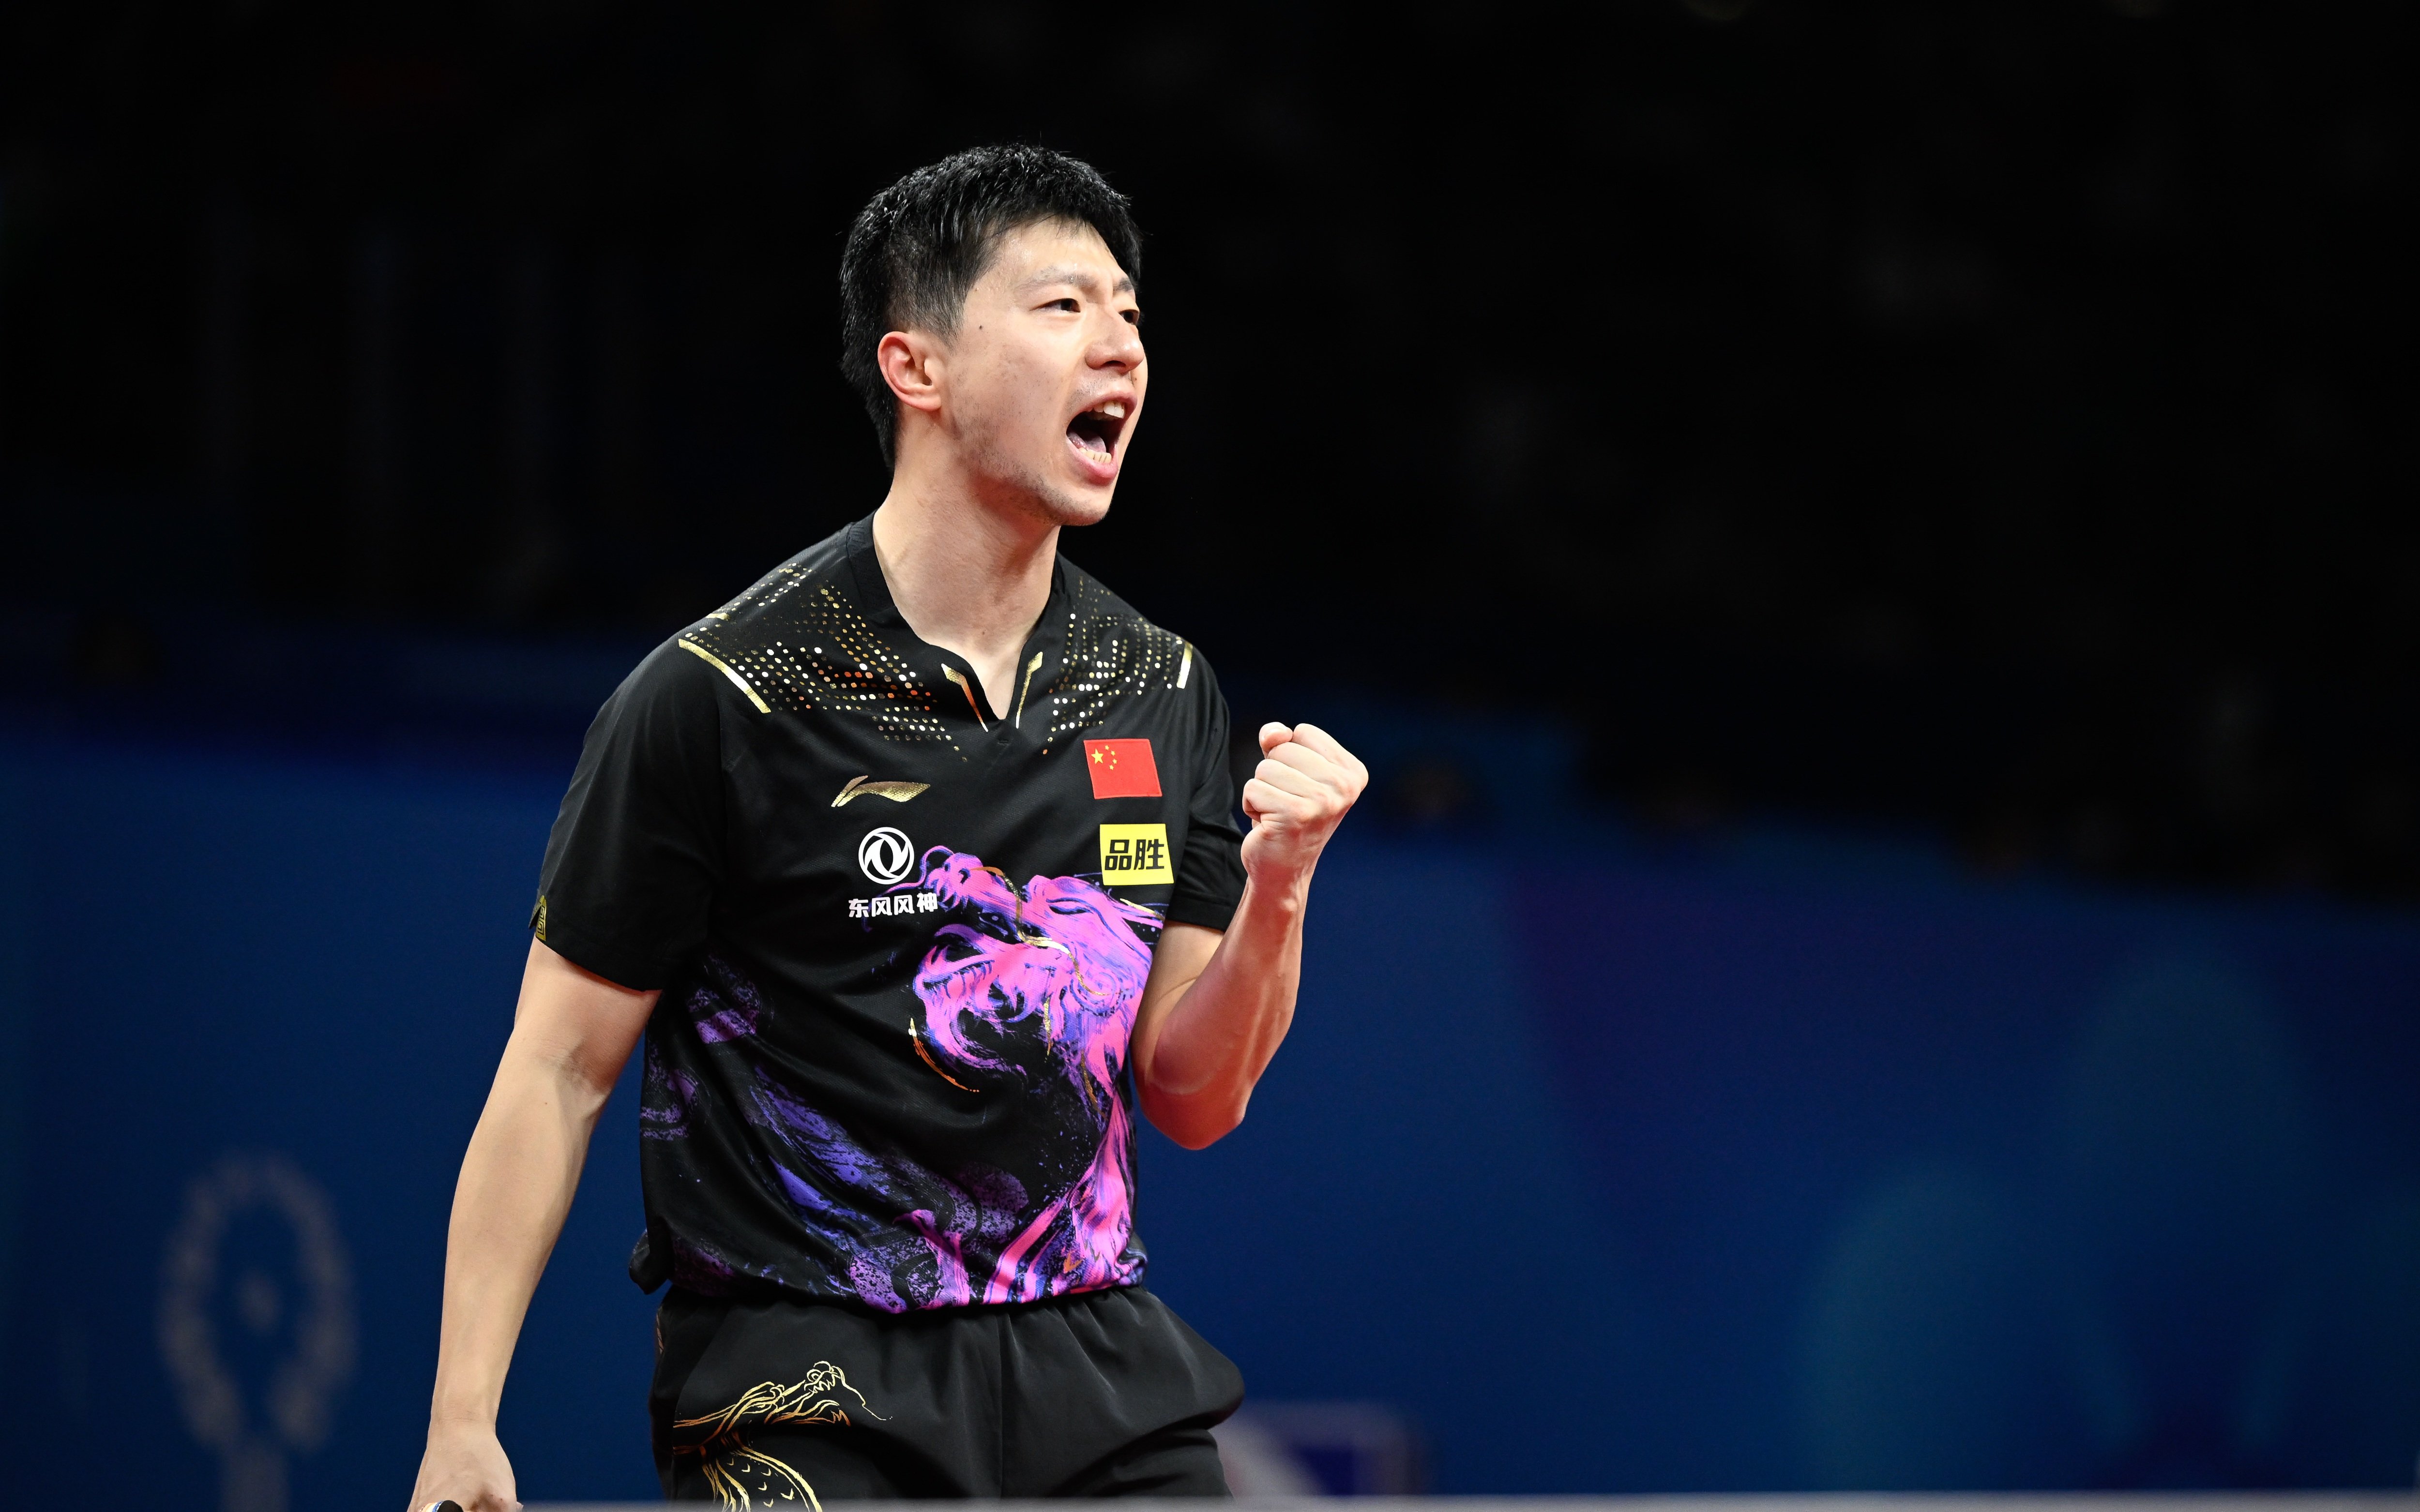 马龙第8次夺得世乒赛团体冠军。 新华社记者 刘续 摄